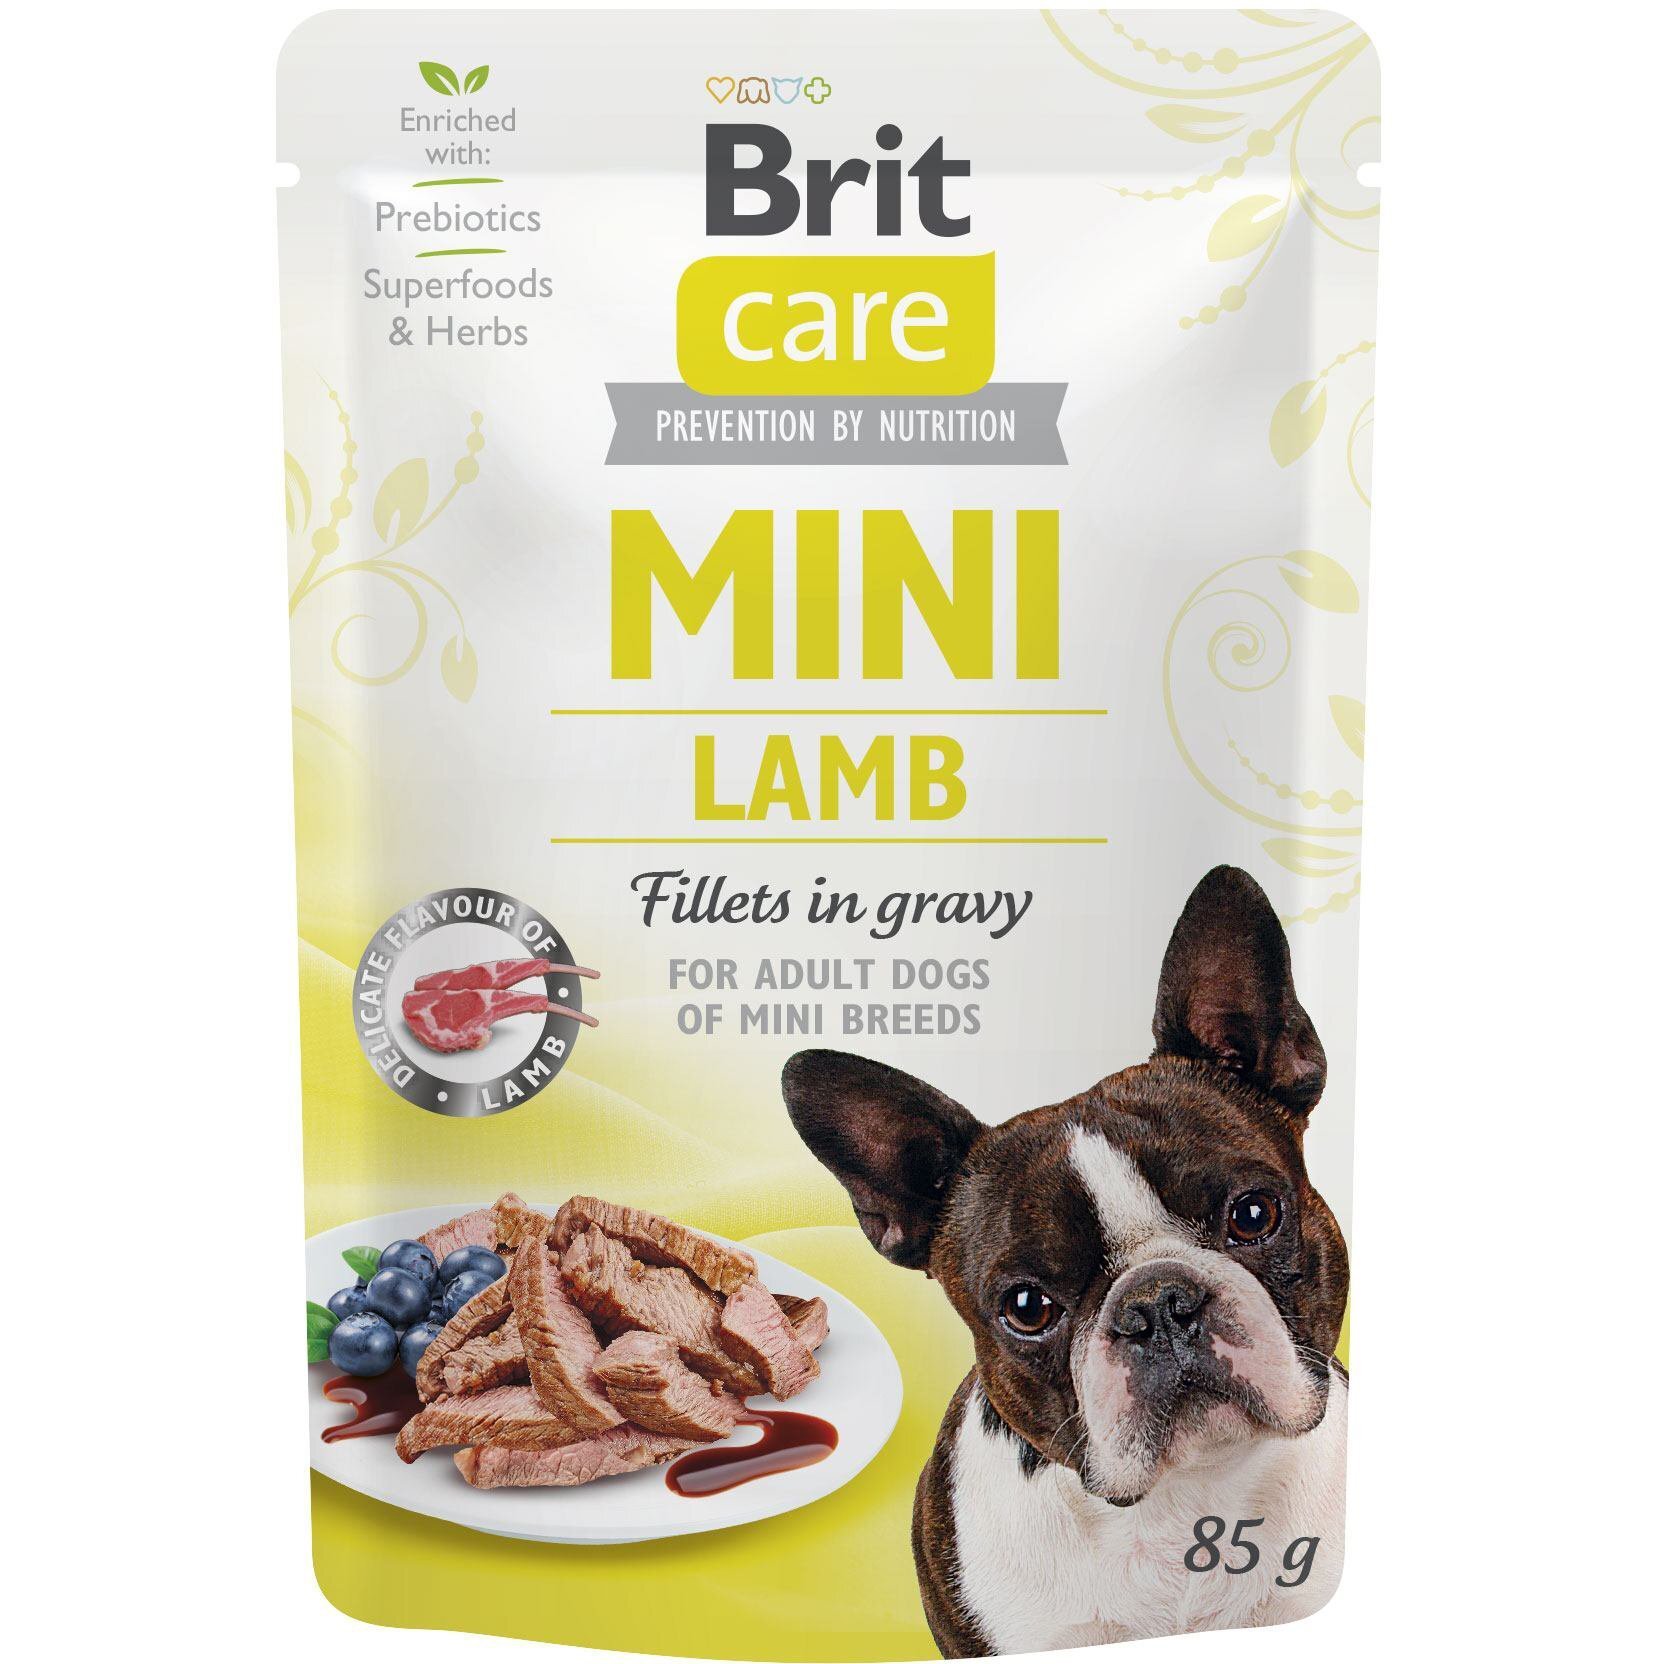 Влажный корм для собак Brit Care Mini pouch 85г филе в соусе янгенок фото 1